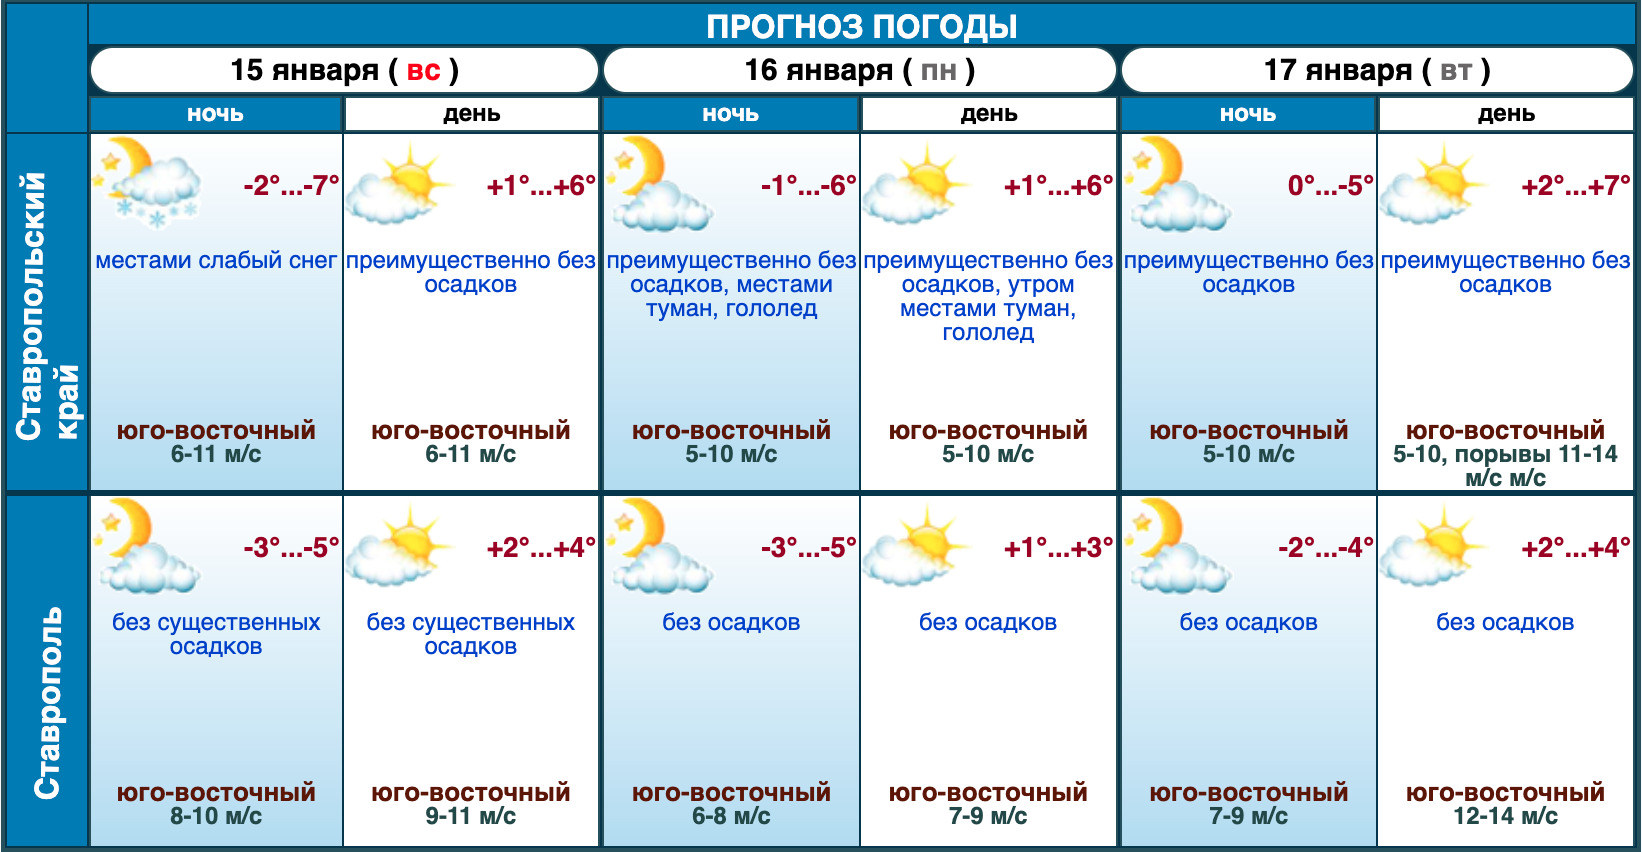 С 20 июня по 10 июля. Гидрометцентр. Погода в Ставрополе. Погода в Ставрополе на 10 дней. Град прогноз погоды.